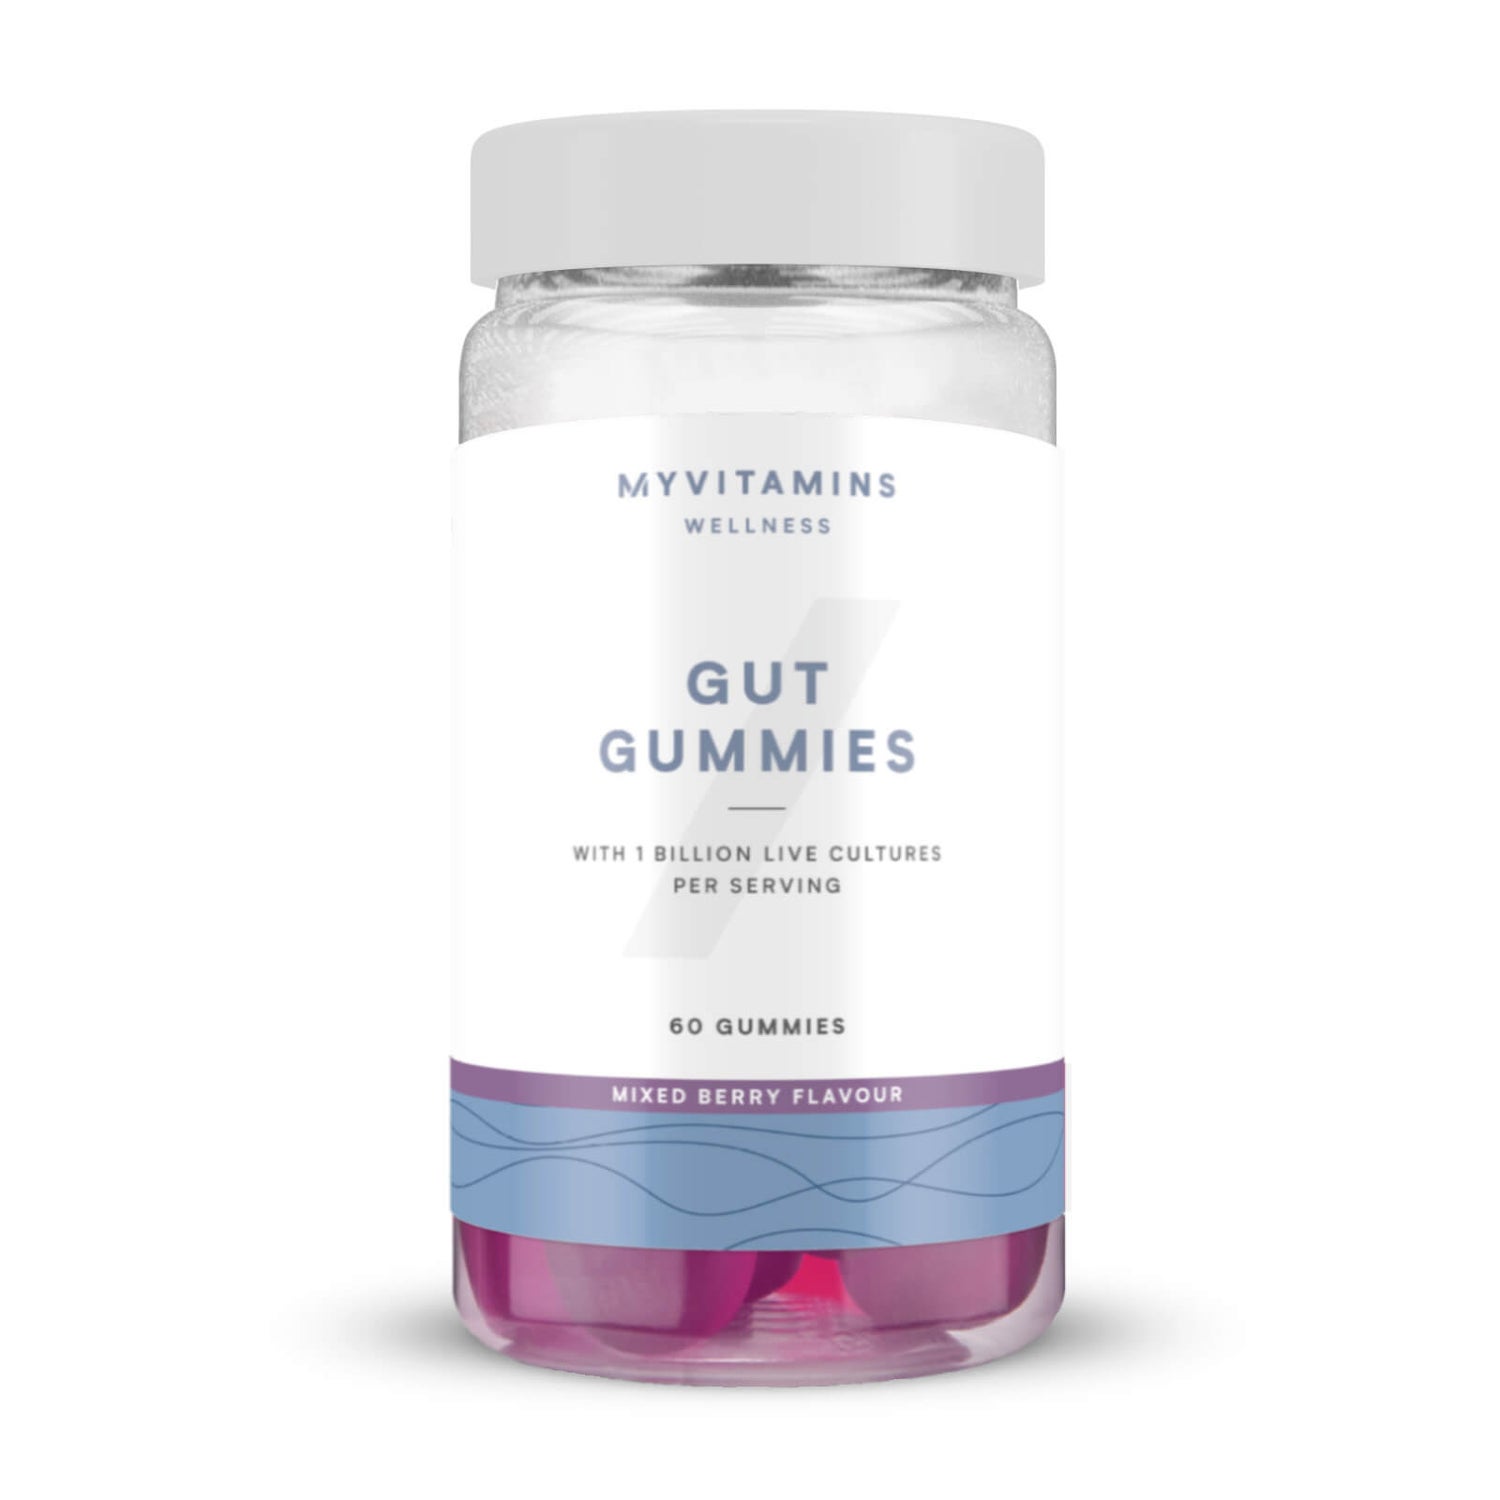 Gut Gummies - 60Gominolas - Frutas del Bosque